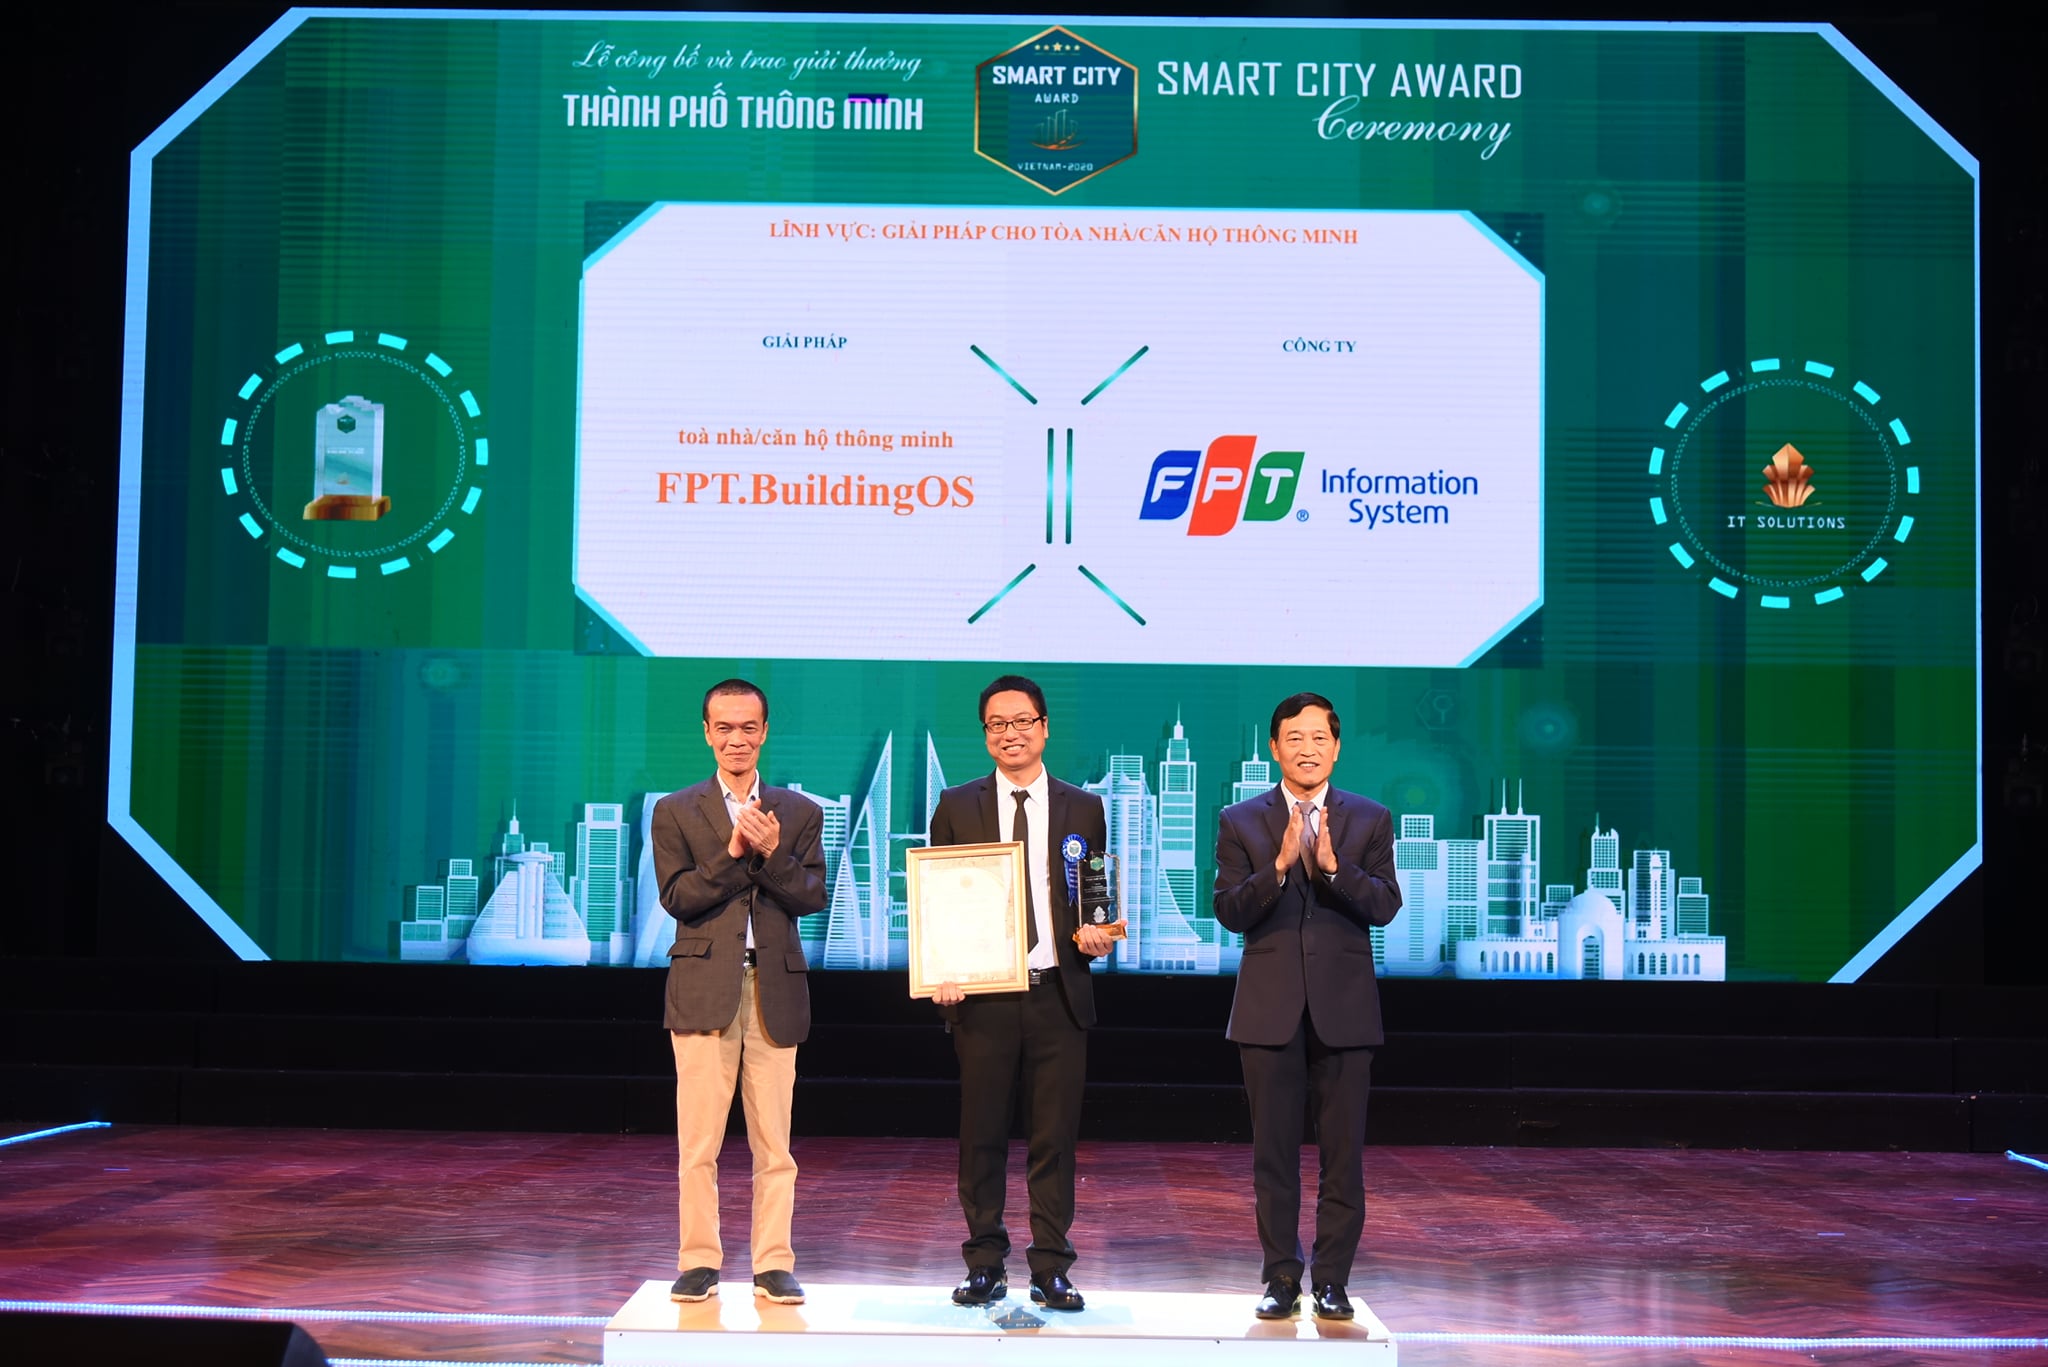 FPT.BuildingOS – Giải pháp toà nhà/căn hộ thông minh đạt Giải thưởng Thành phố thông minh Việt Nam 2020